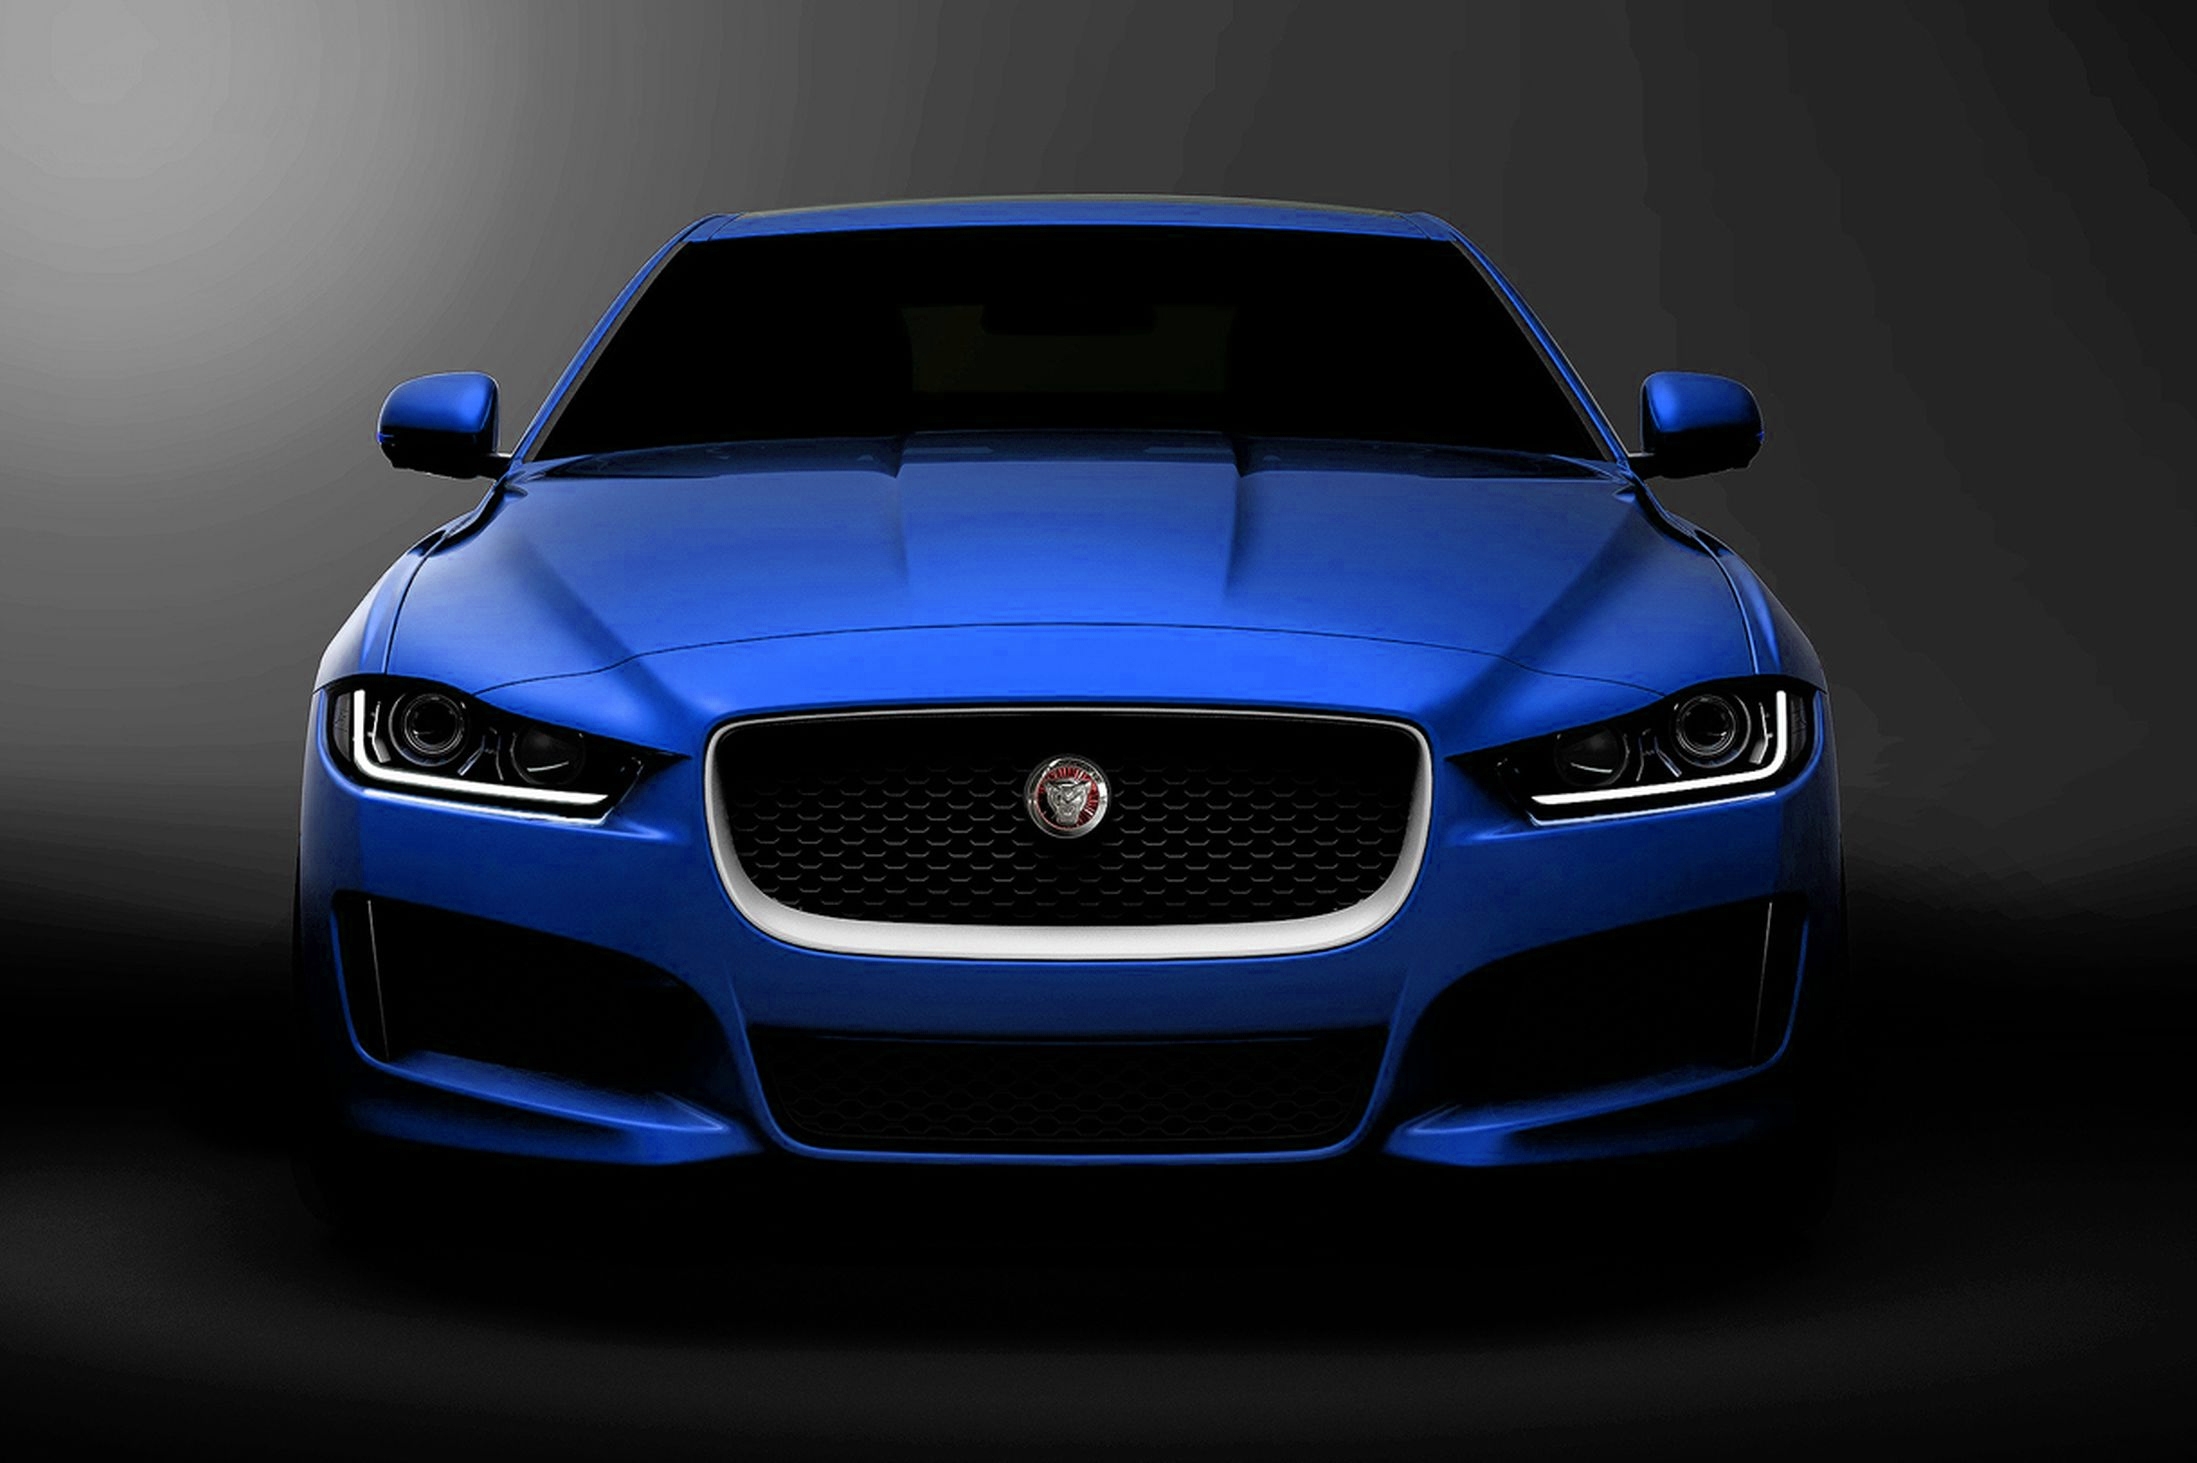 voitures jaguar fonds d'écran hd,véhicule terrestre,véhicule de luxe,voiture,véhicule,voiture de performance